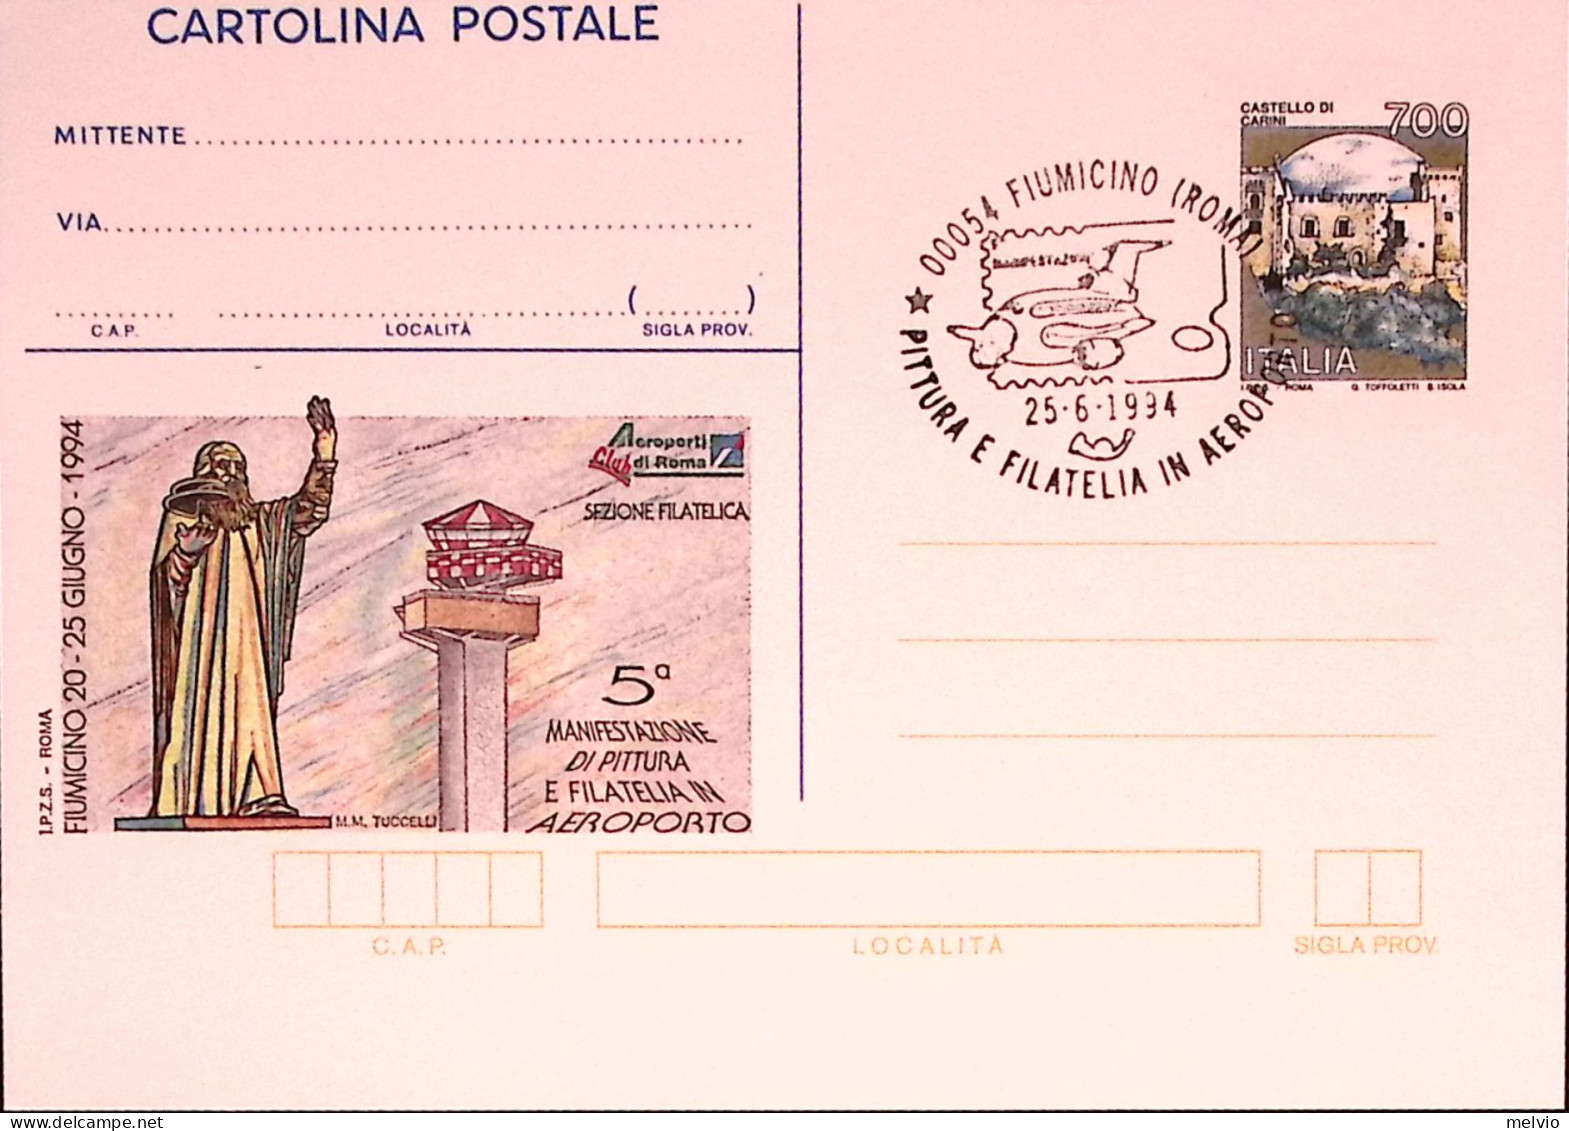 1994-ROMA AEROPORTO Cartolina Postale IPZS Lire 700 Con Ann Spec - Ganzsachen